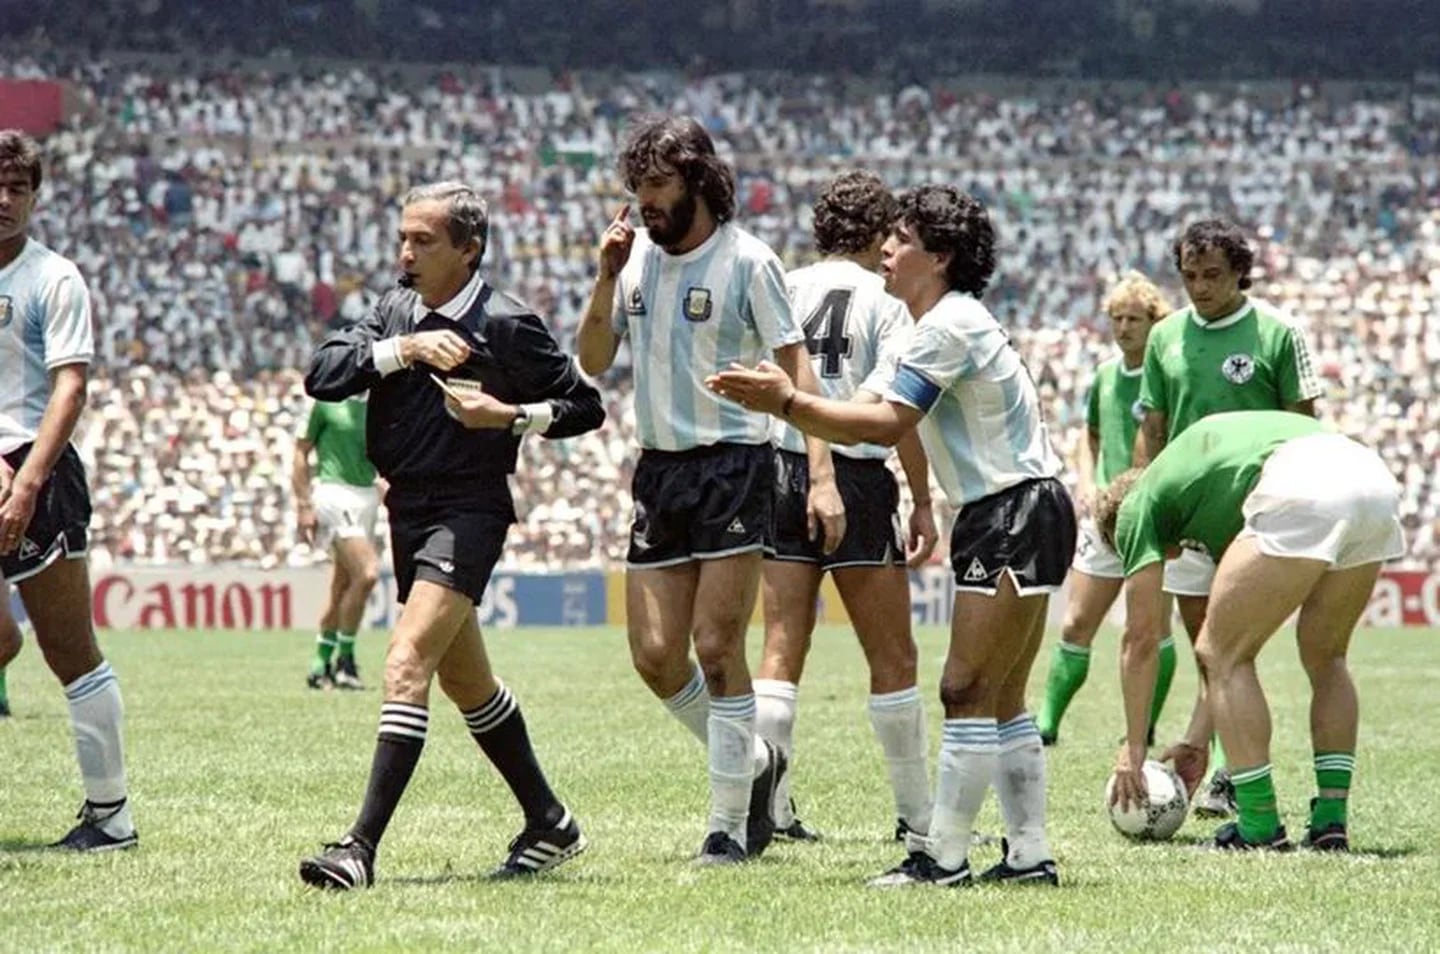 Una triste noticia conmocionó al mundo del fútbol: Tras sufrir problemas renales, murió el árbitro brasileño que dirigió la final del Mundial 1986 entre Argentina y Alemania, Romualdo Arppi Filho